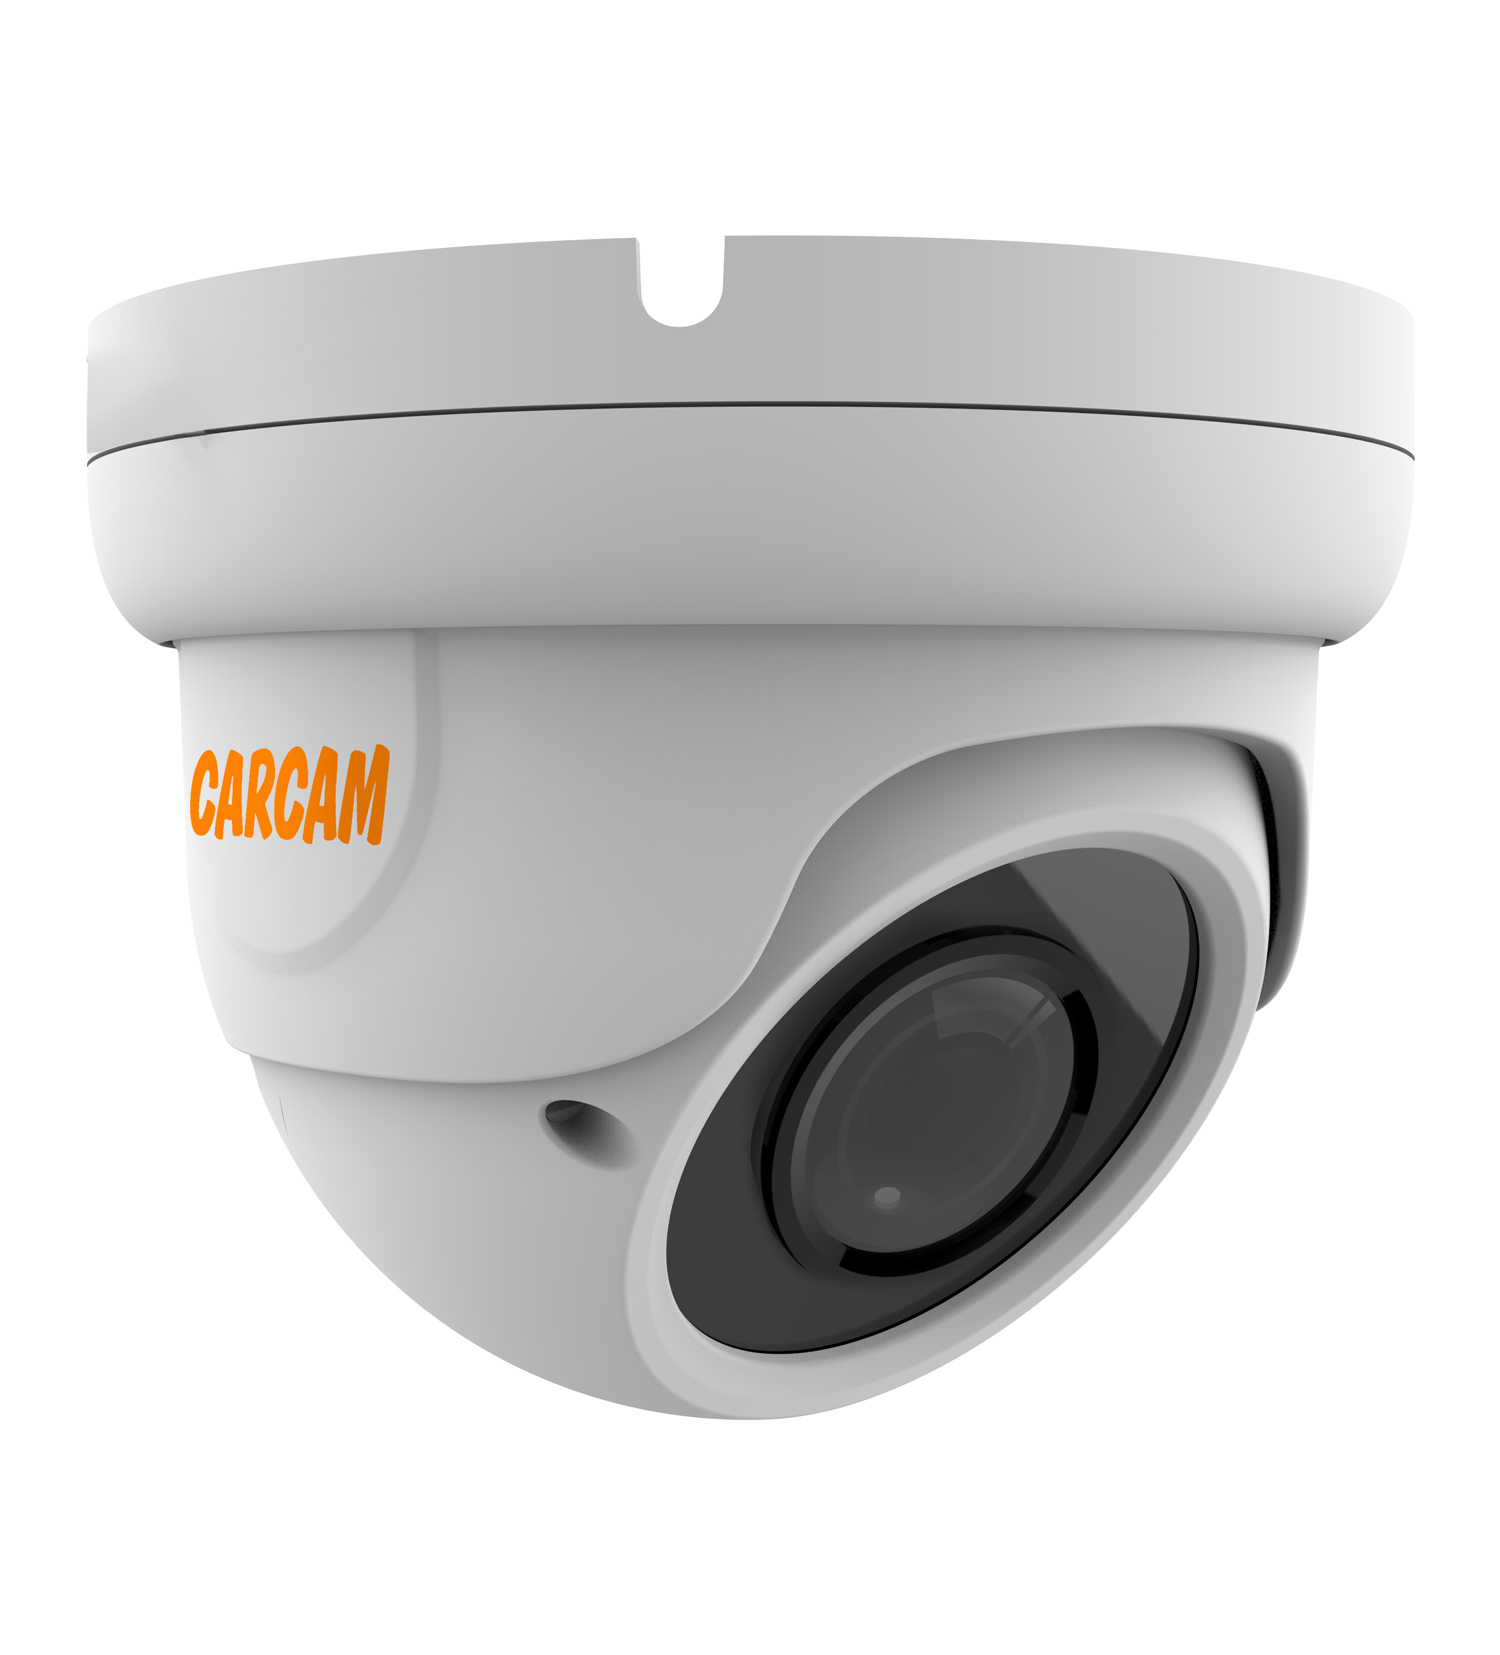 Купольная AHD-камера CARCAM 5MP Dome HD Camera 5041 (2.8-12mm) купольная ip камера carcam 4mp dome ip camera 4076 2 8 12mm